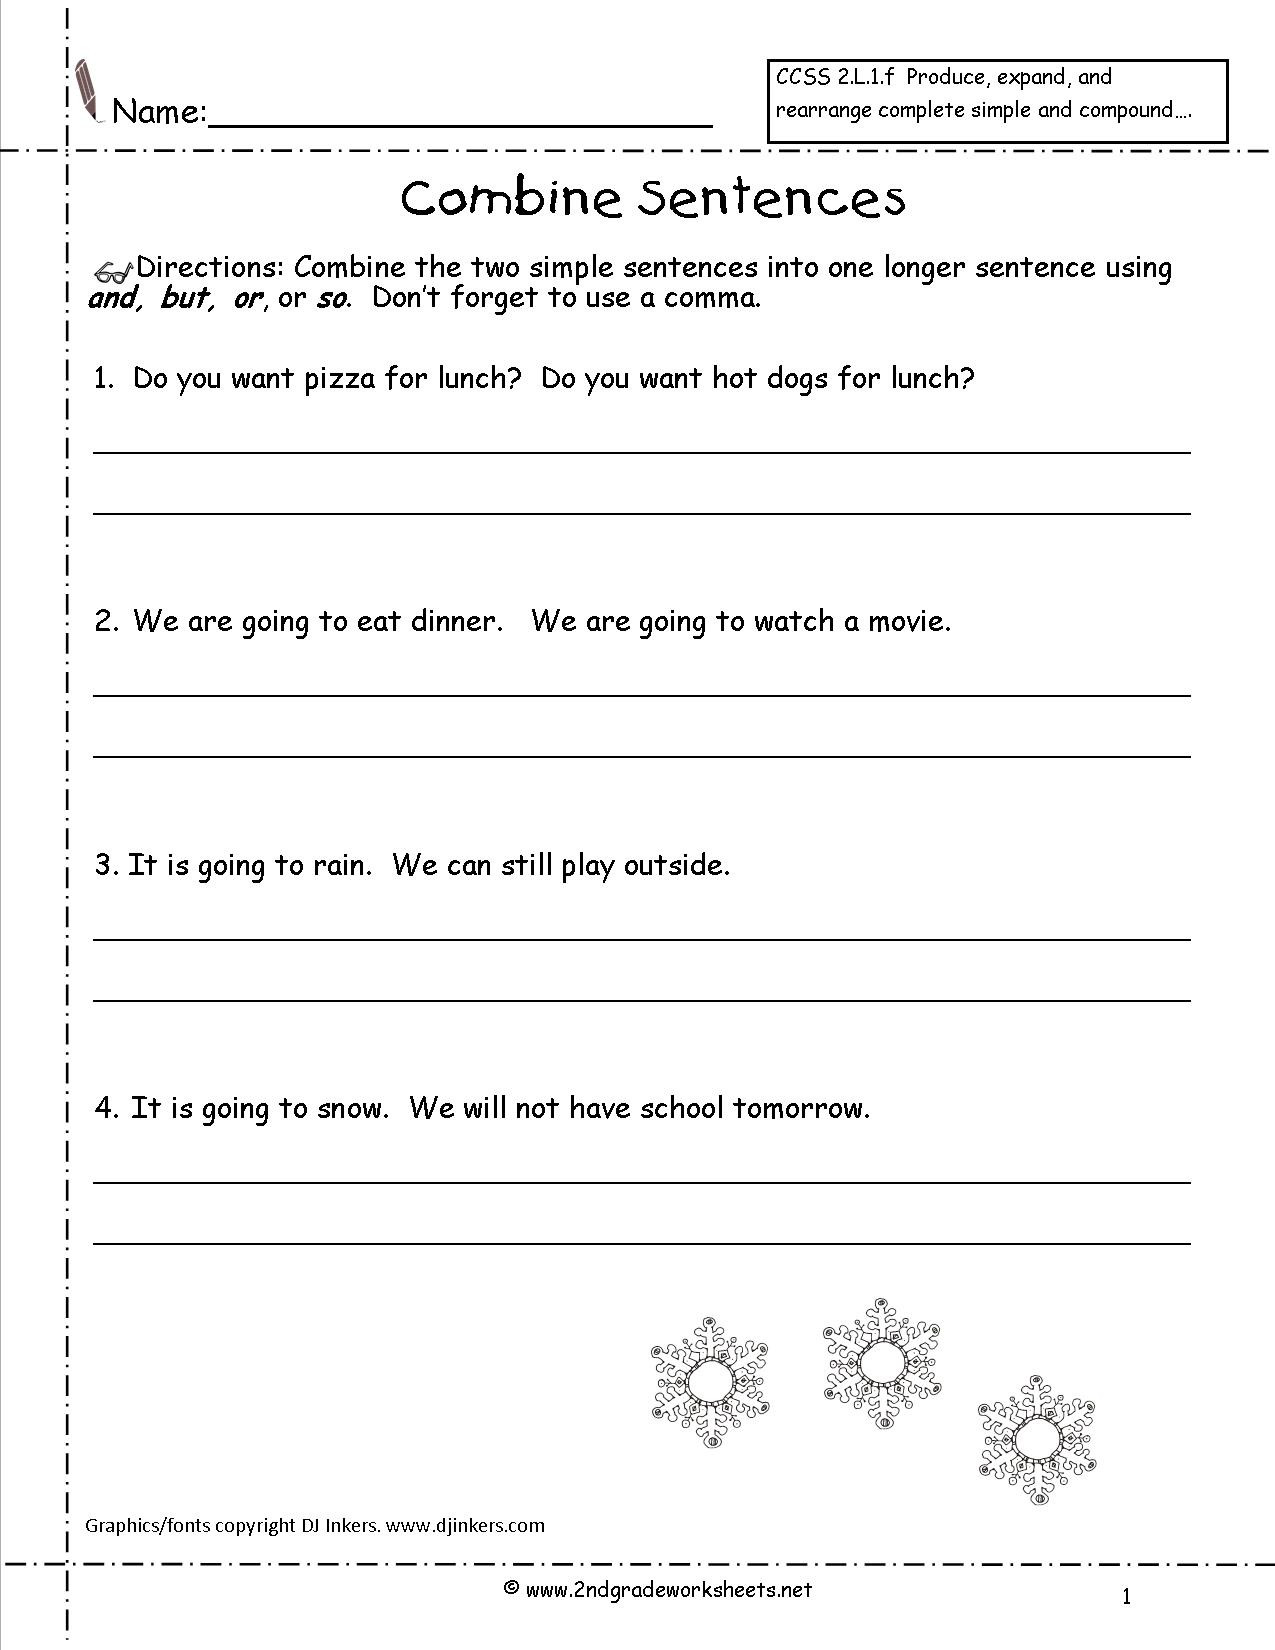 Free Printable Sentence Writing Worksheets Second Grade Sentences Worksheets Ccss 2 L 1 F Worksheets